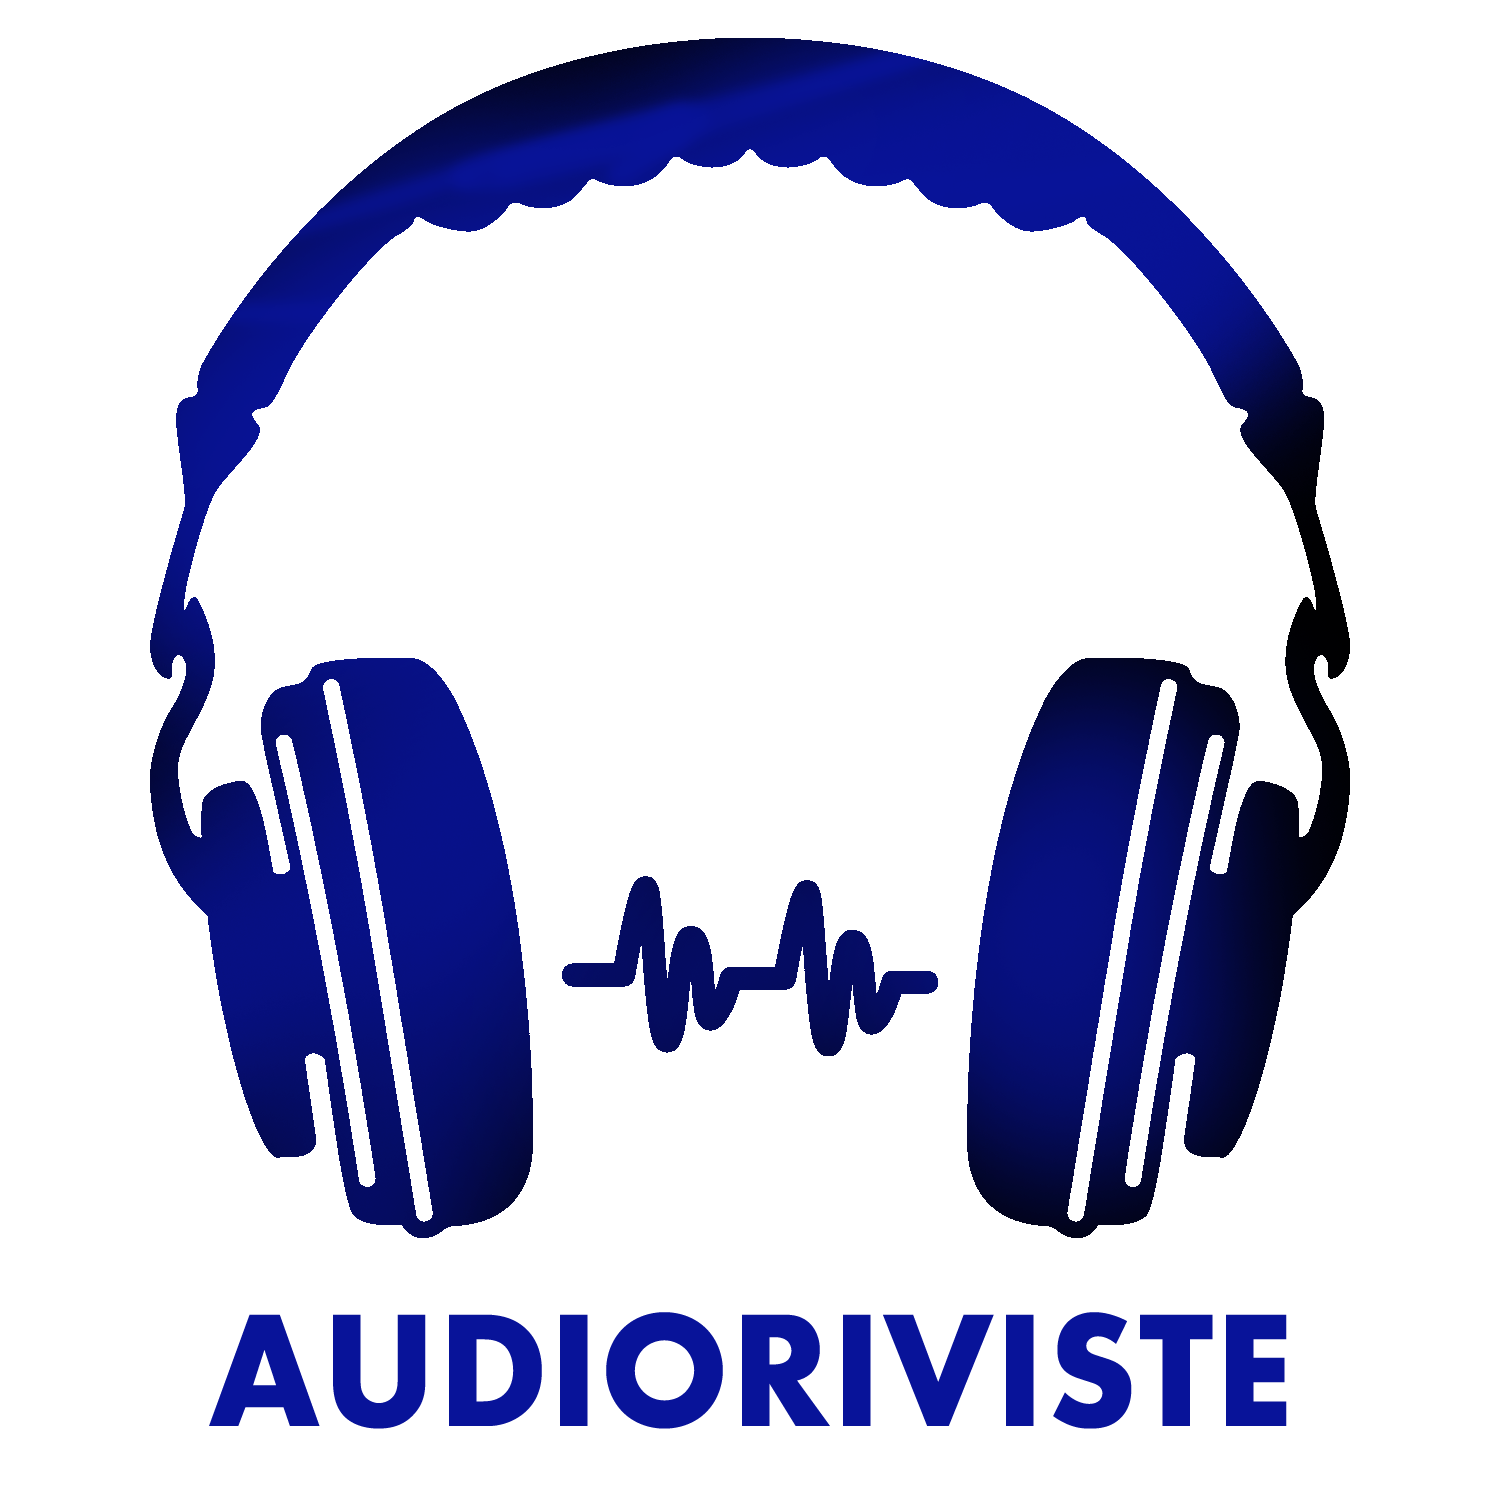 Audioriviste